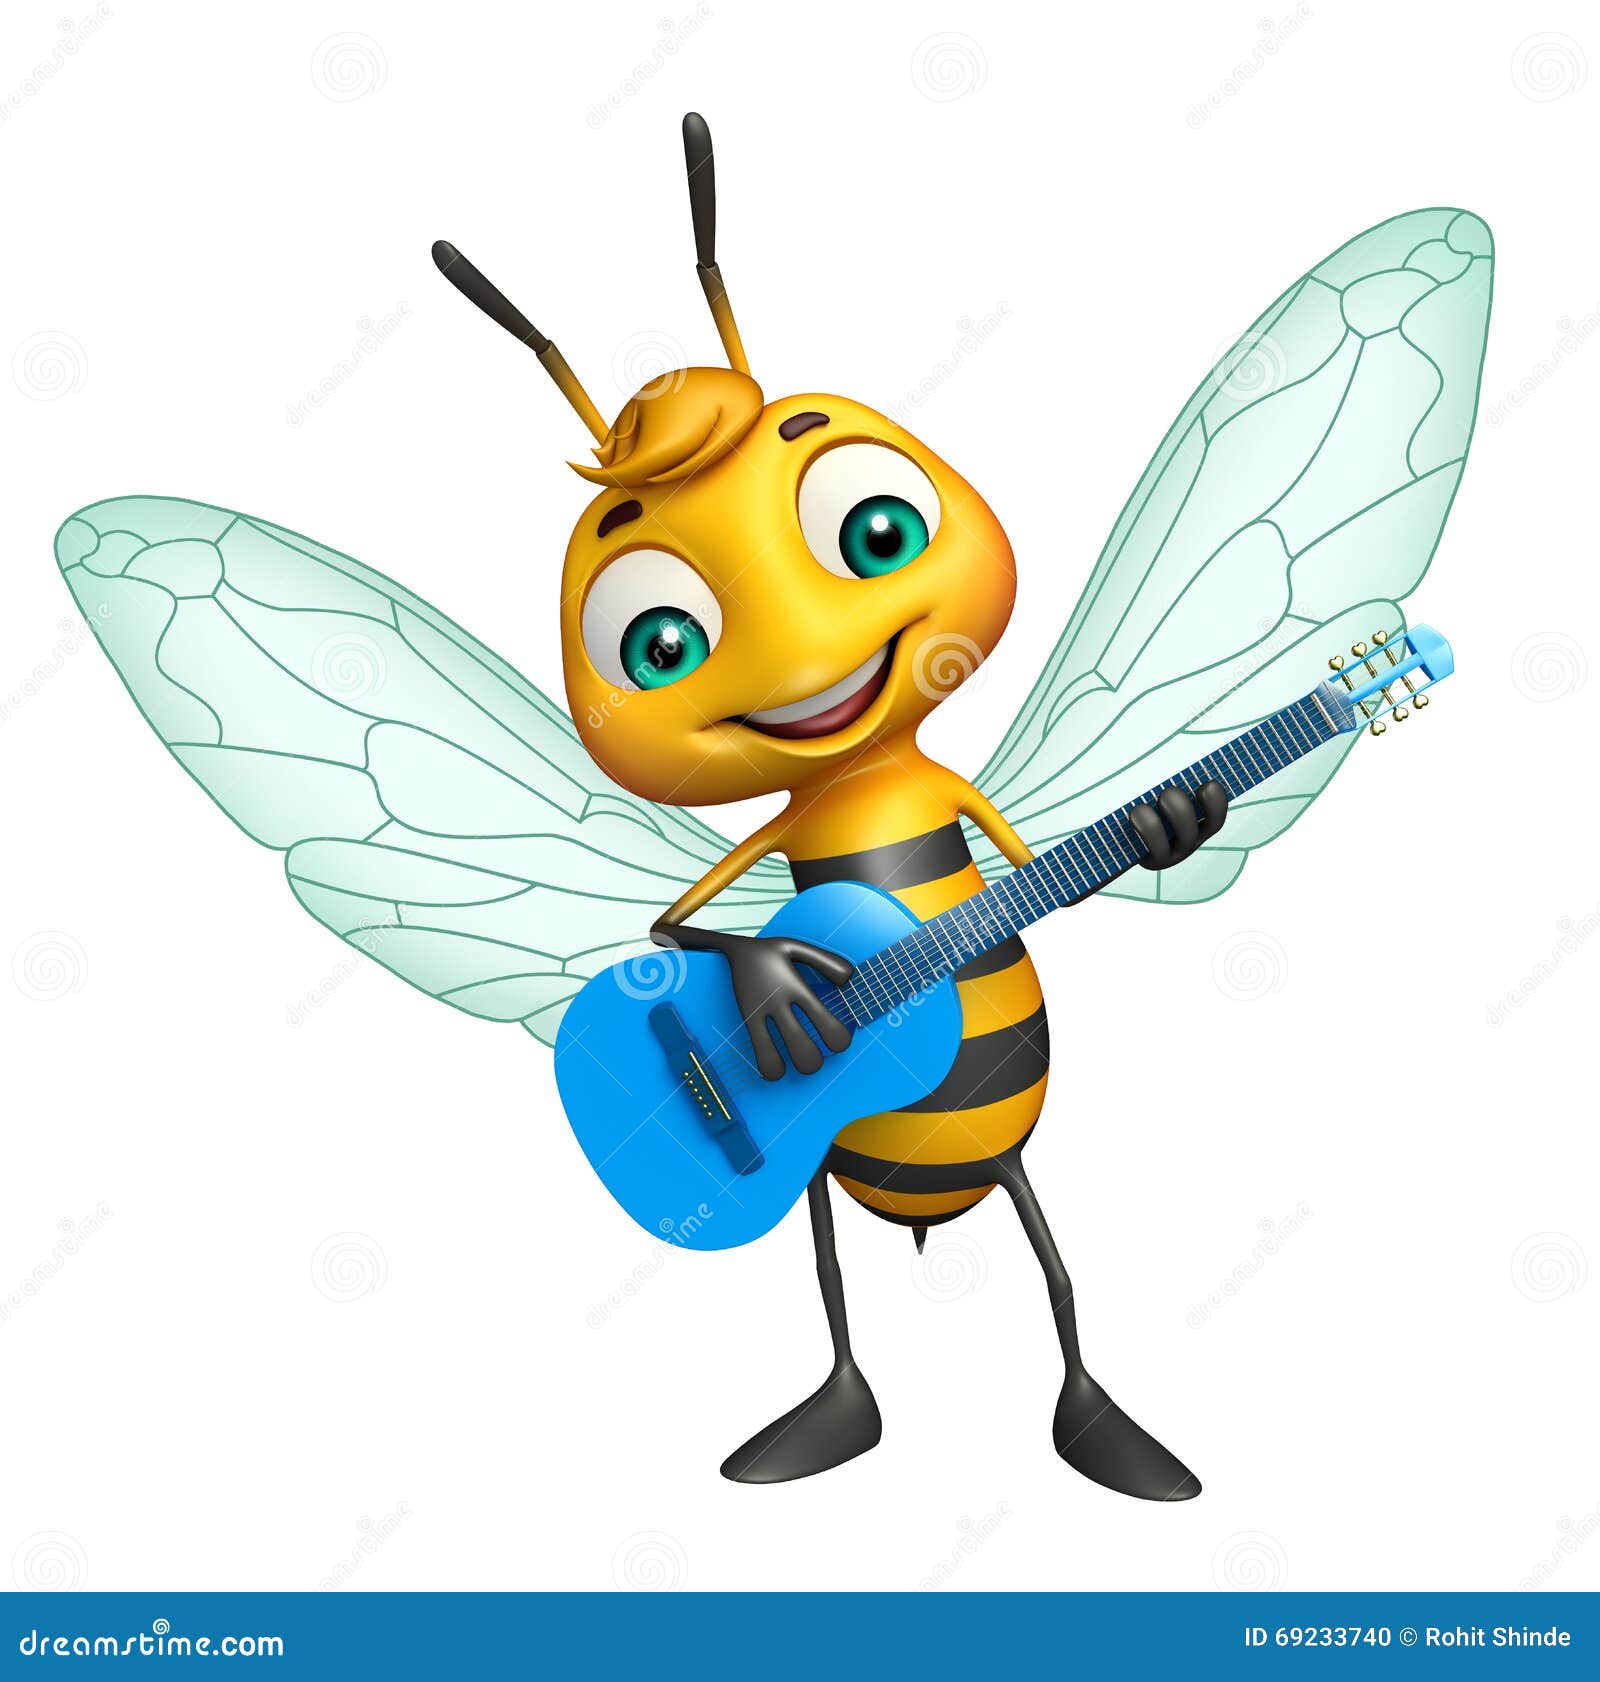 [Heller]Potez 540 F-AOOJ - Page 4 Personnage-de-dessin-anim%C3%A9-mignon-d-abeille-avec-la-guitare-69233740